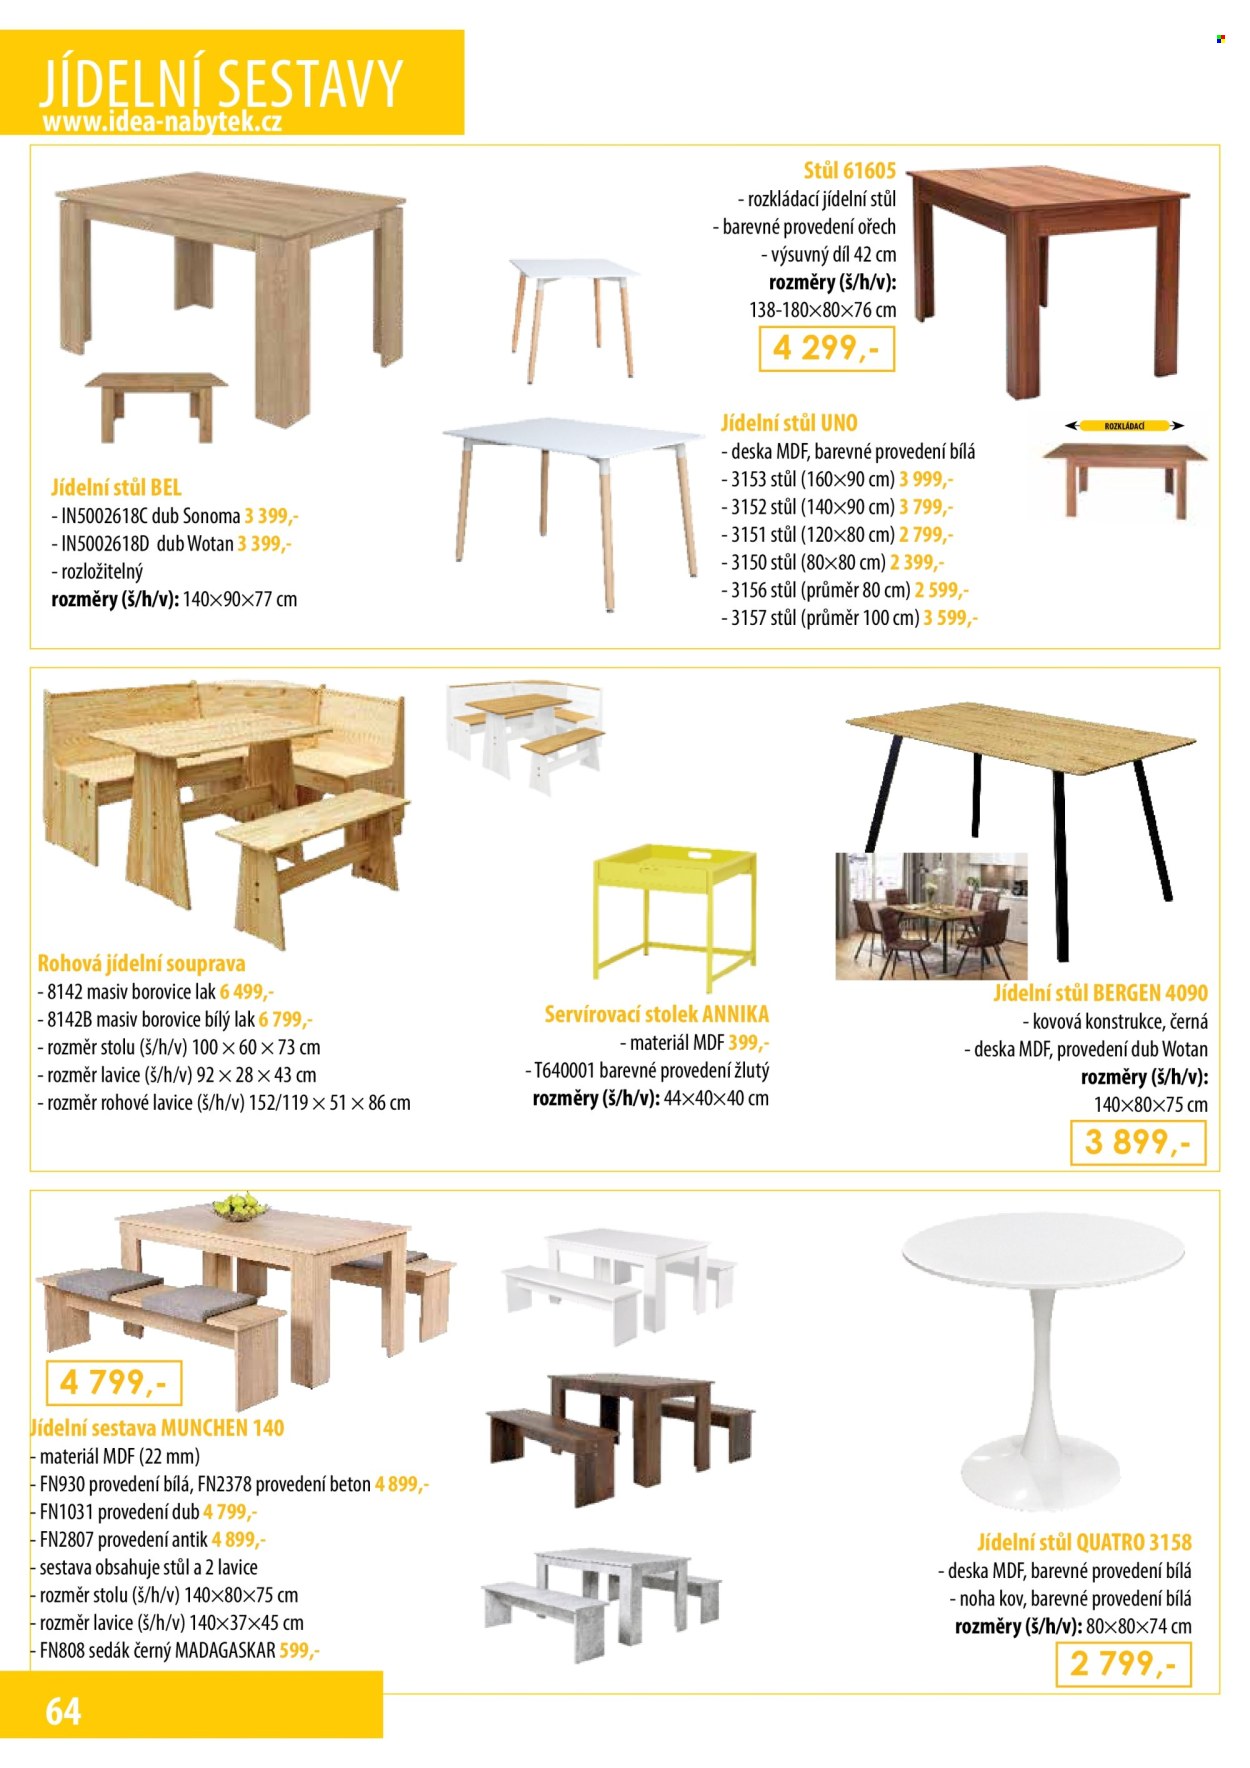 thumbnail - Leták IDEA nábytek - Produkty v akci - jídelní sestava, jídelní stůl, servírovací stolek, stolek, lavice, podsedák. Strana 64.